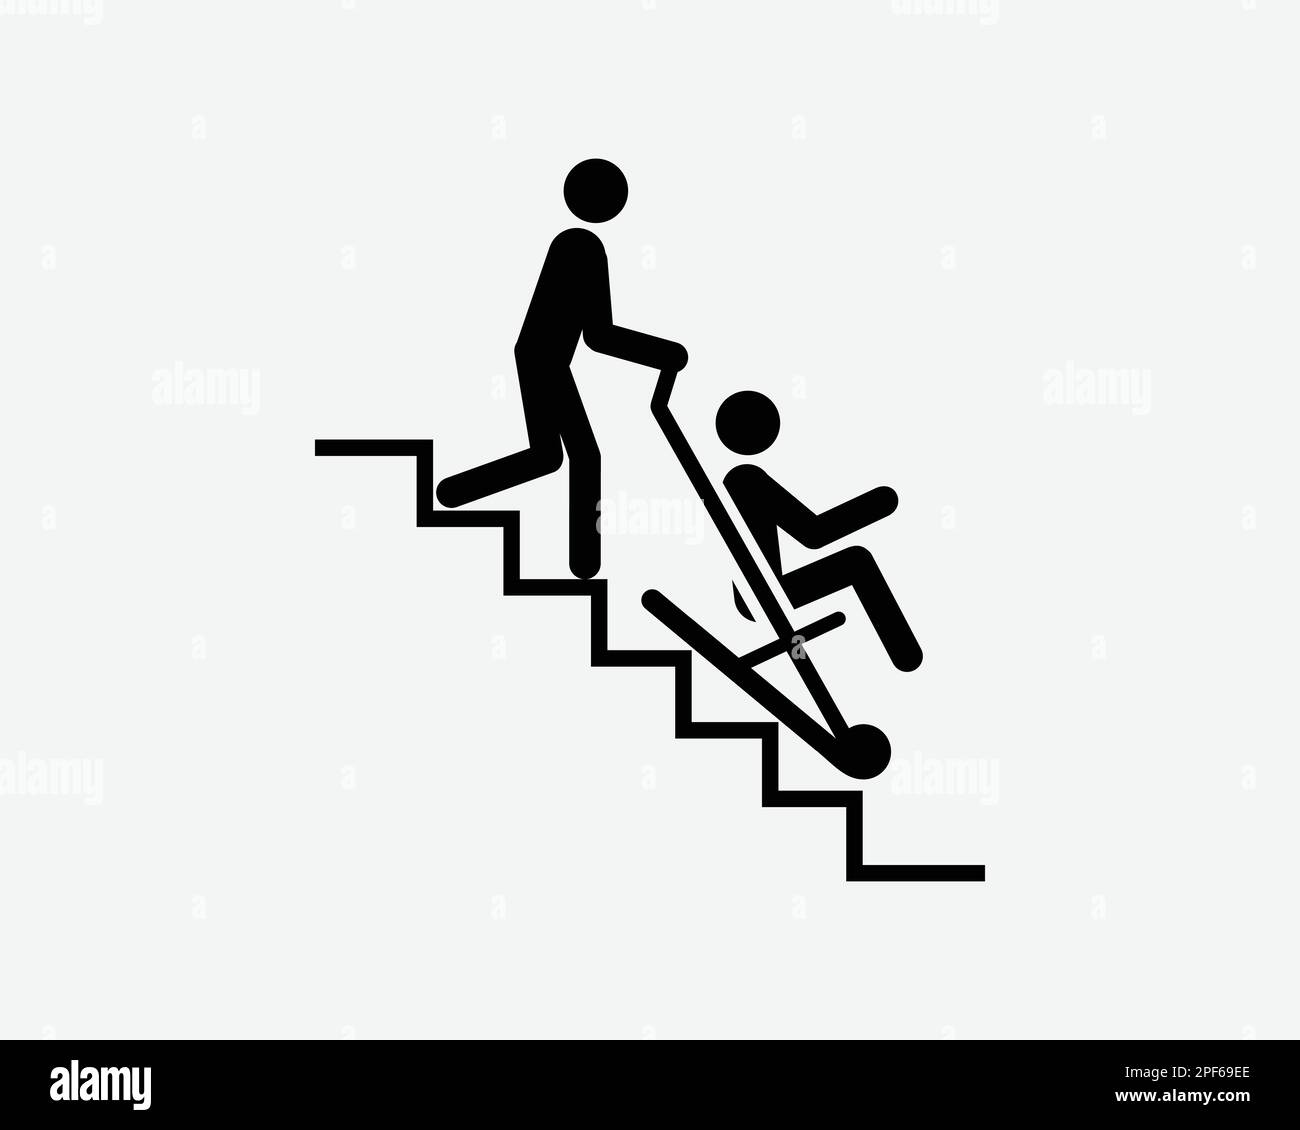 Chaise d'évacuation d'urgence escalier marches dispositif de sauvetage Noir blanc Silhouette symbole icône Clipart graphique Illustration Illustration pictogramme vecteur Illustration de Vecteur